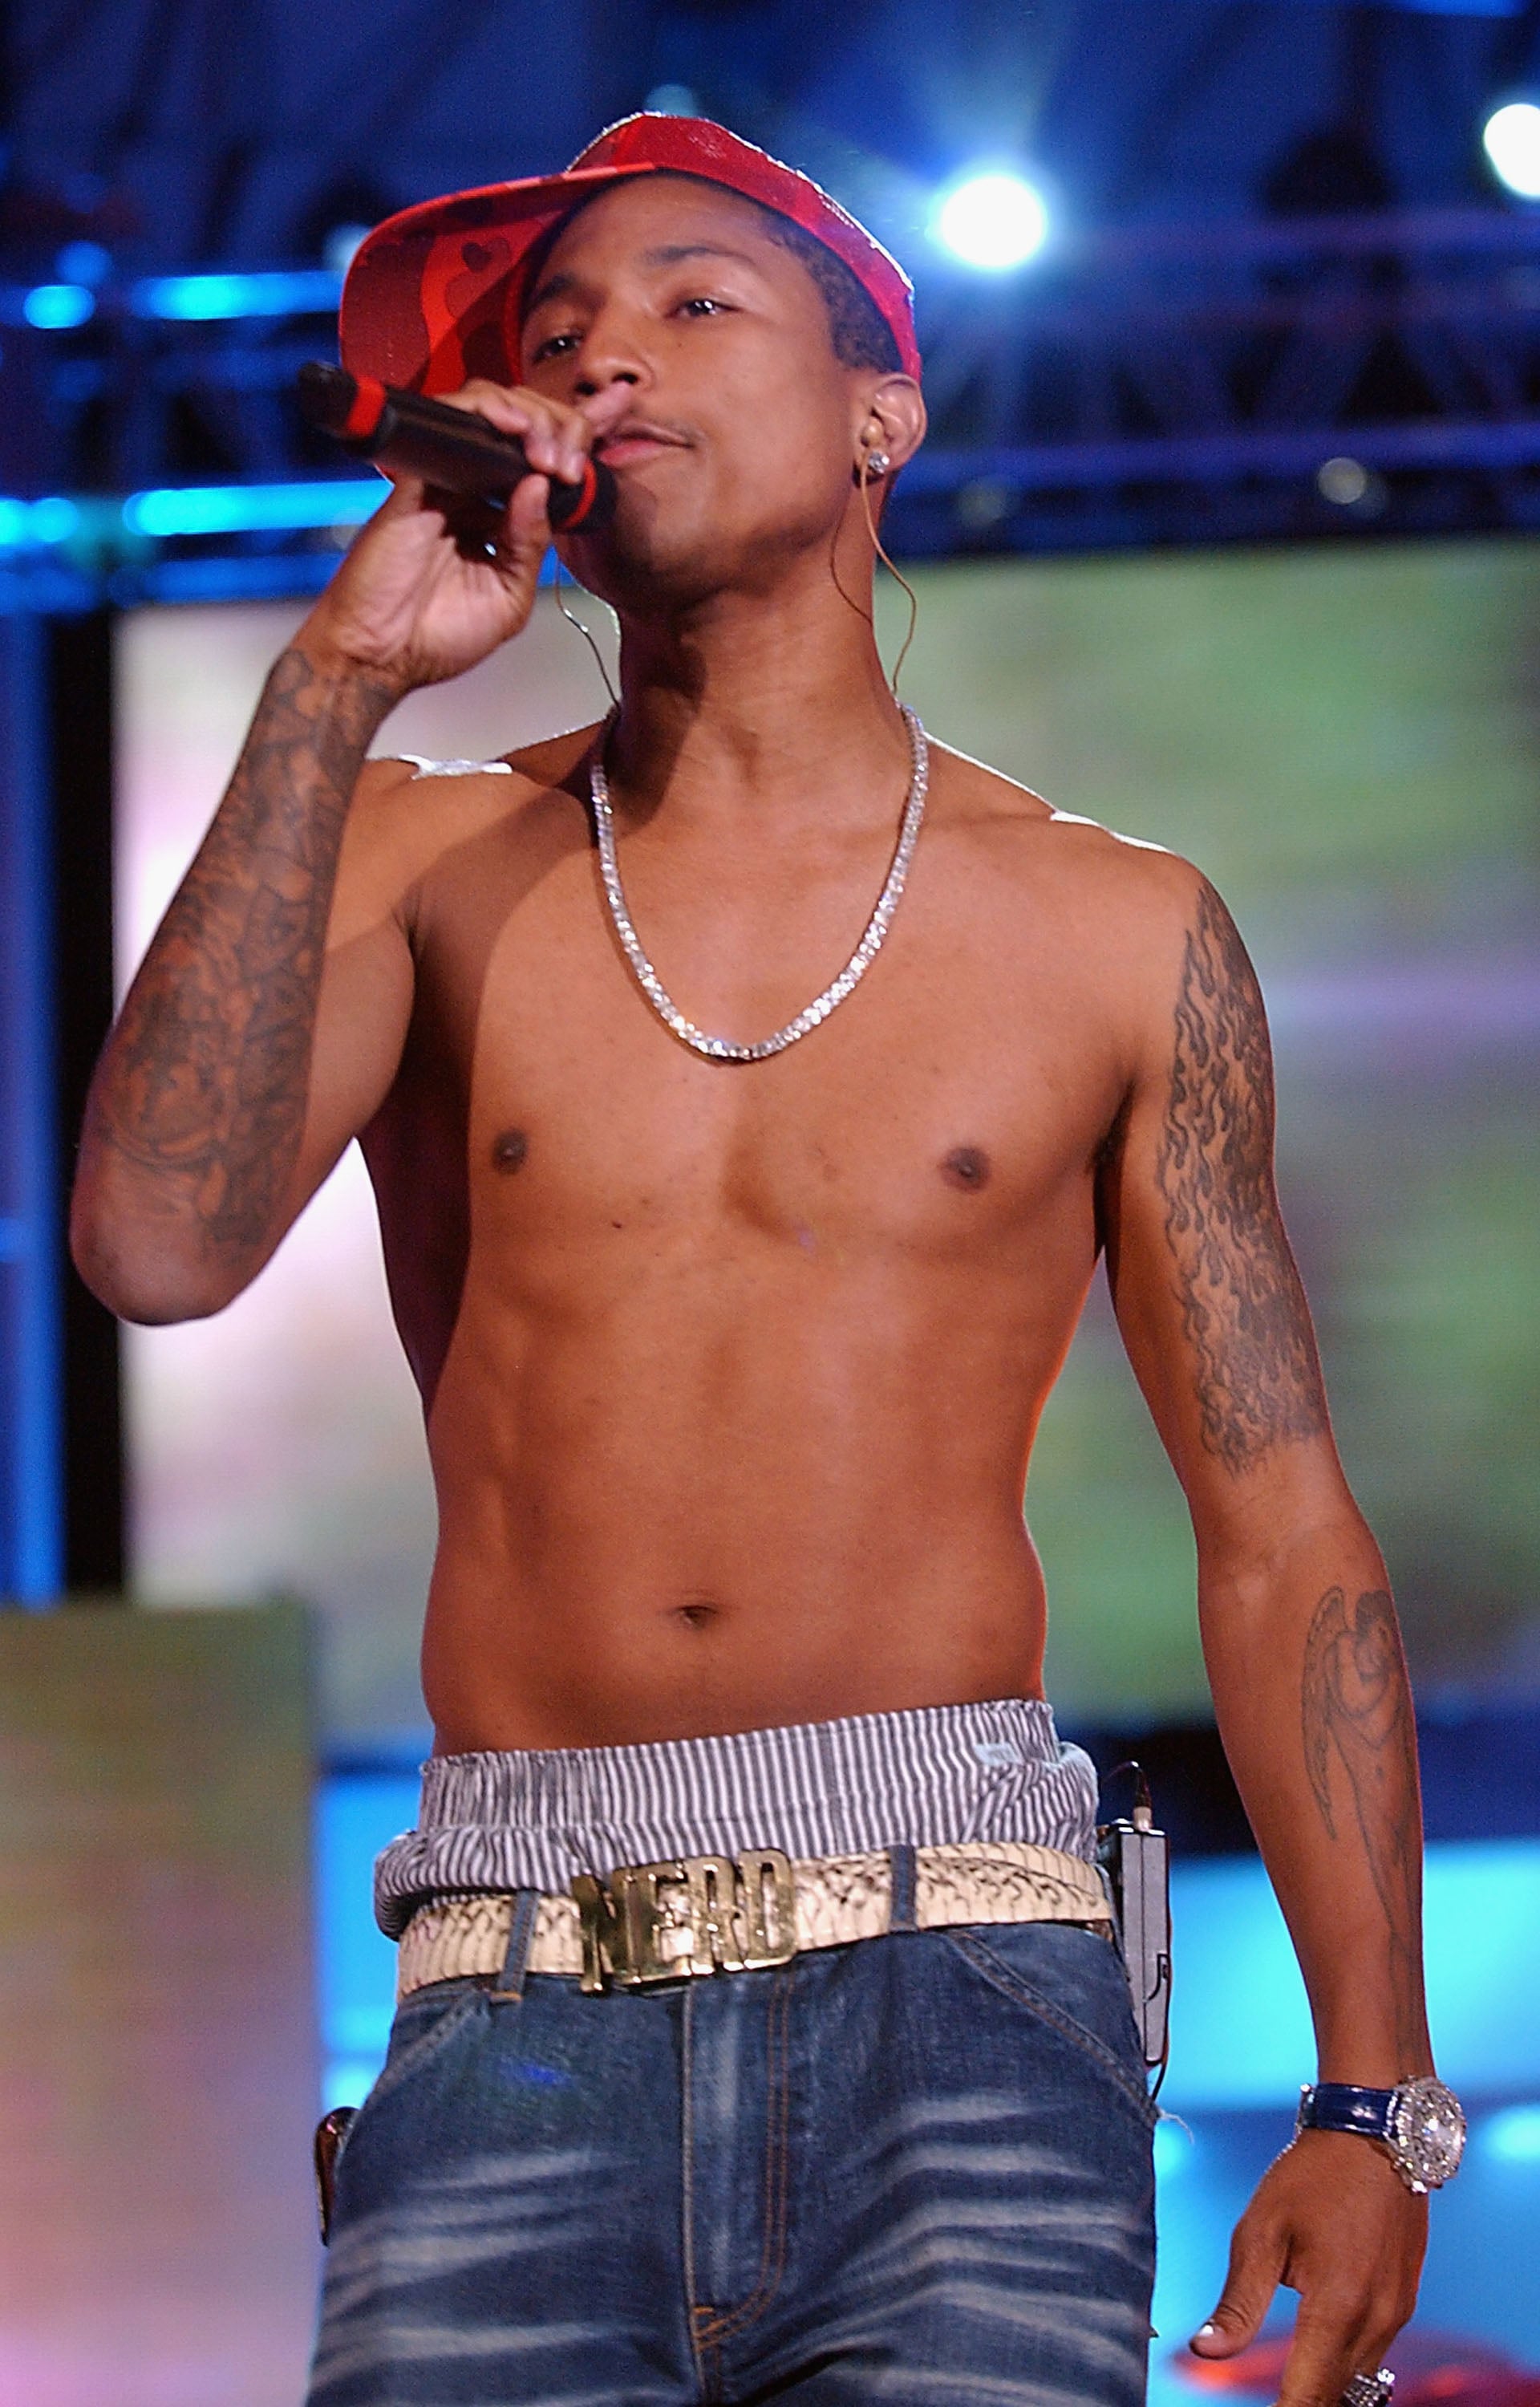 Pharrell Williams Tattoo  Its Meaning  Body Art Guru